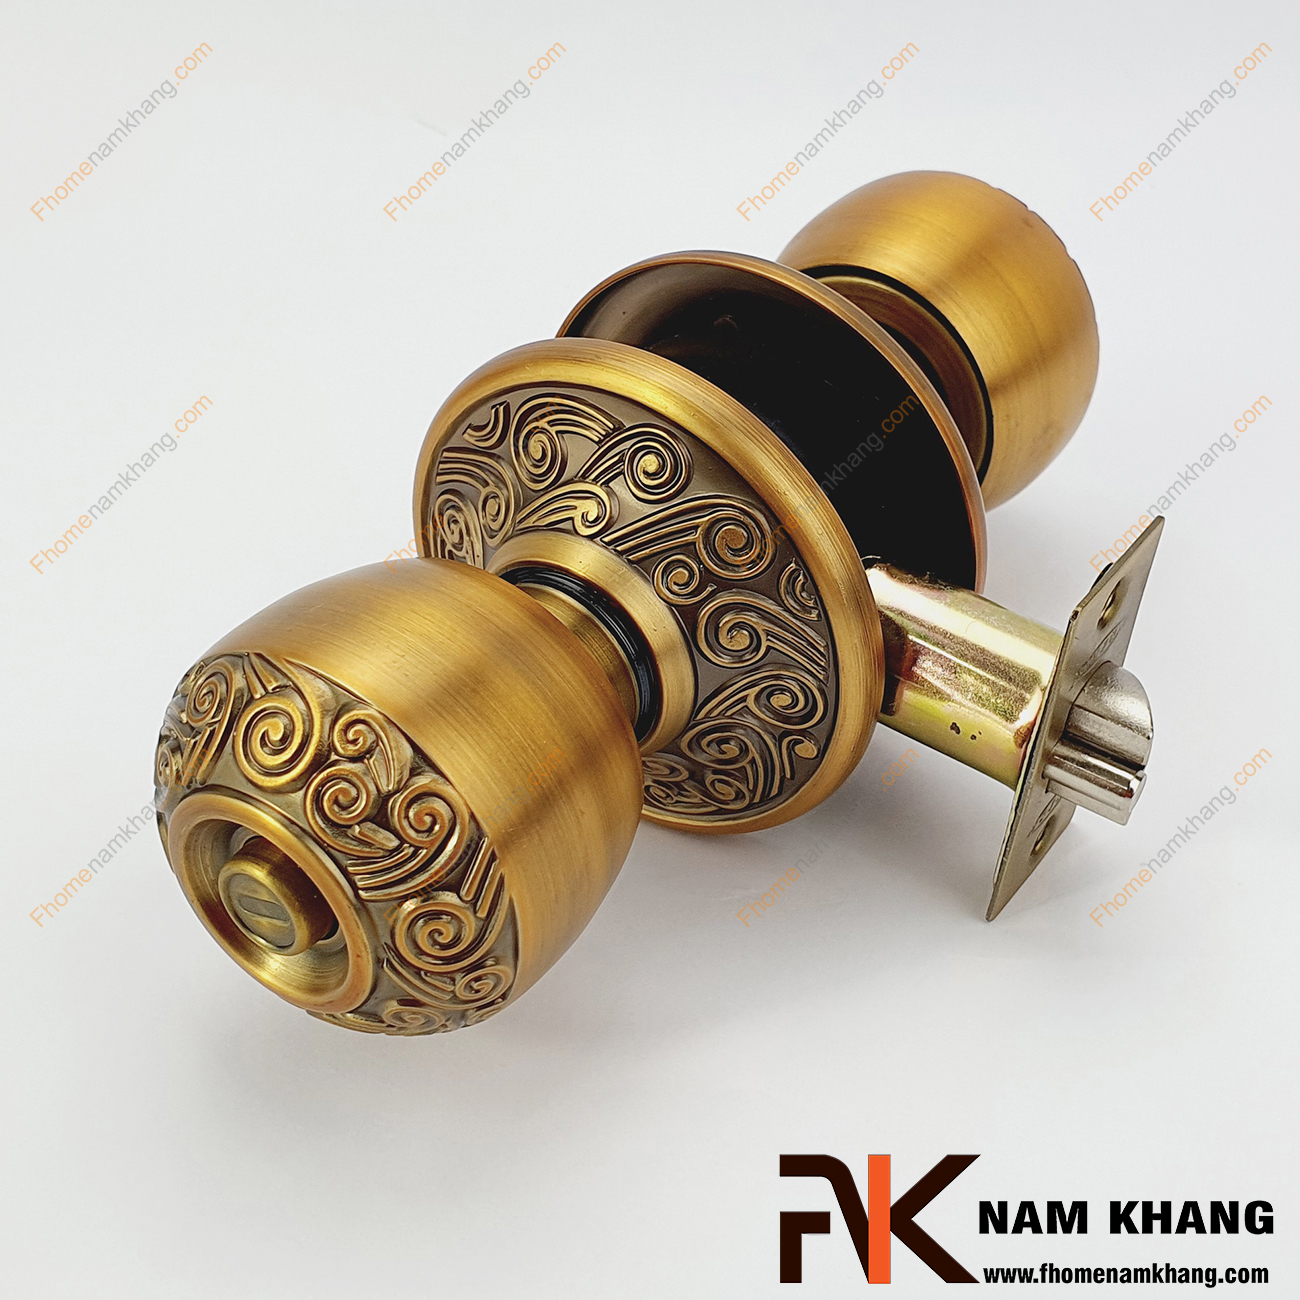 Khóa tay nắm tròn màu cafe NK430KTHV-CFC là dạng khóa cửa thông dụng, đơn giản, có thiết kế tay nắm tròn là quả đấm vừa tay của một người trưởng thành.